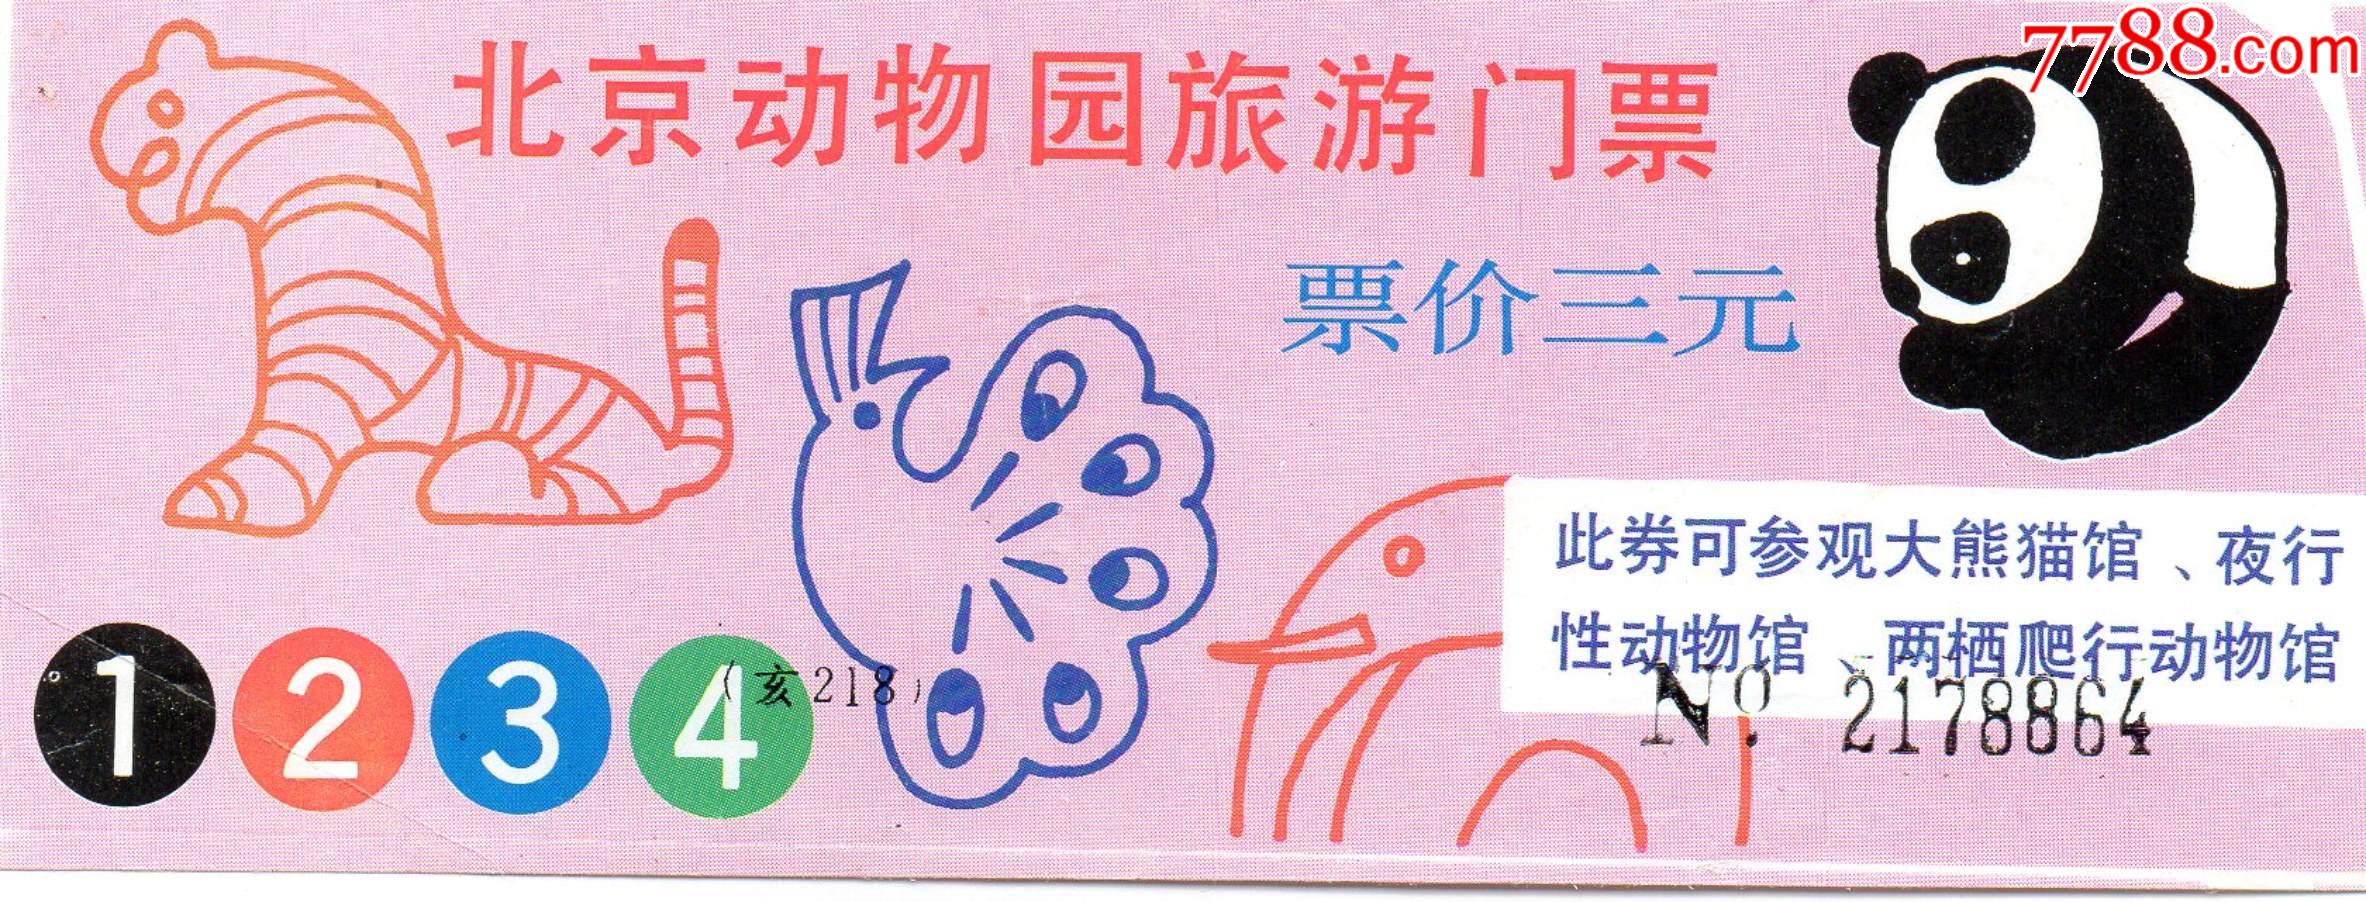 625·4北京动物园·门票门券·早期门票·门券·旅游纪念券·设计新颖